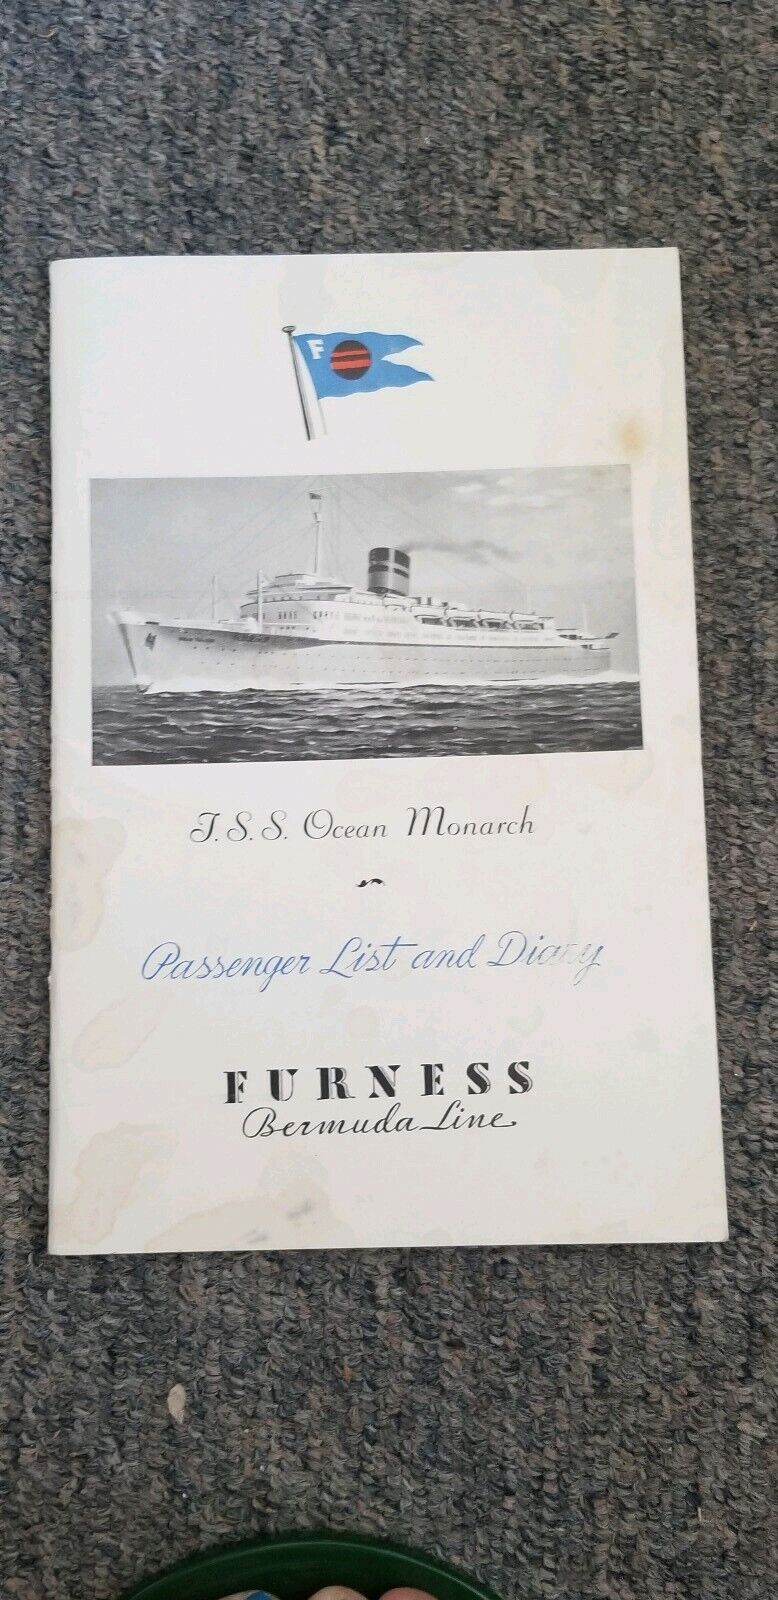 1951 FURNESS BERMUDA LINE OCEAN MONARCH ZEMBO SHRINE CRUISE PASSENGER LIST diary